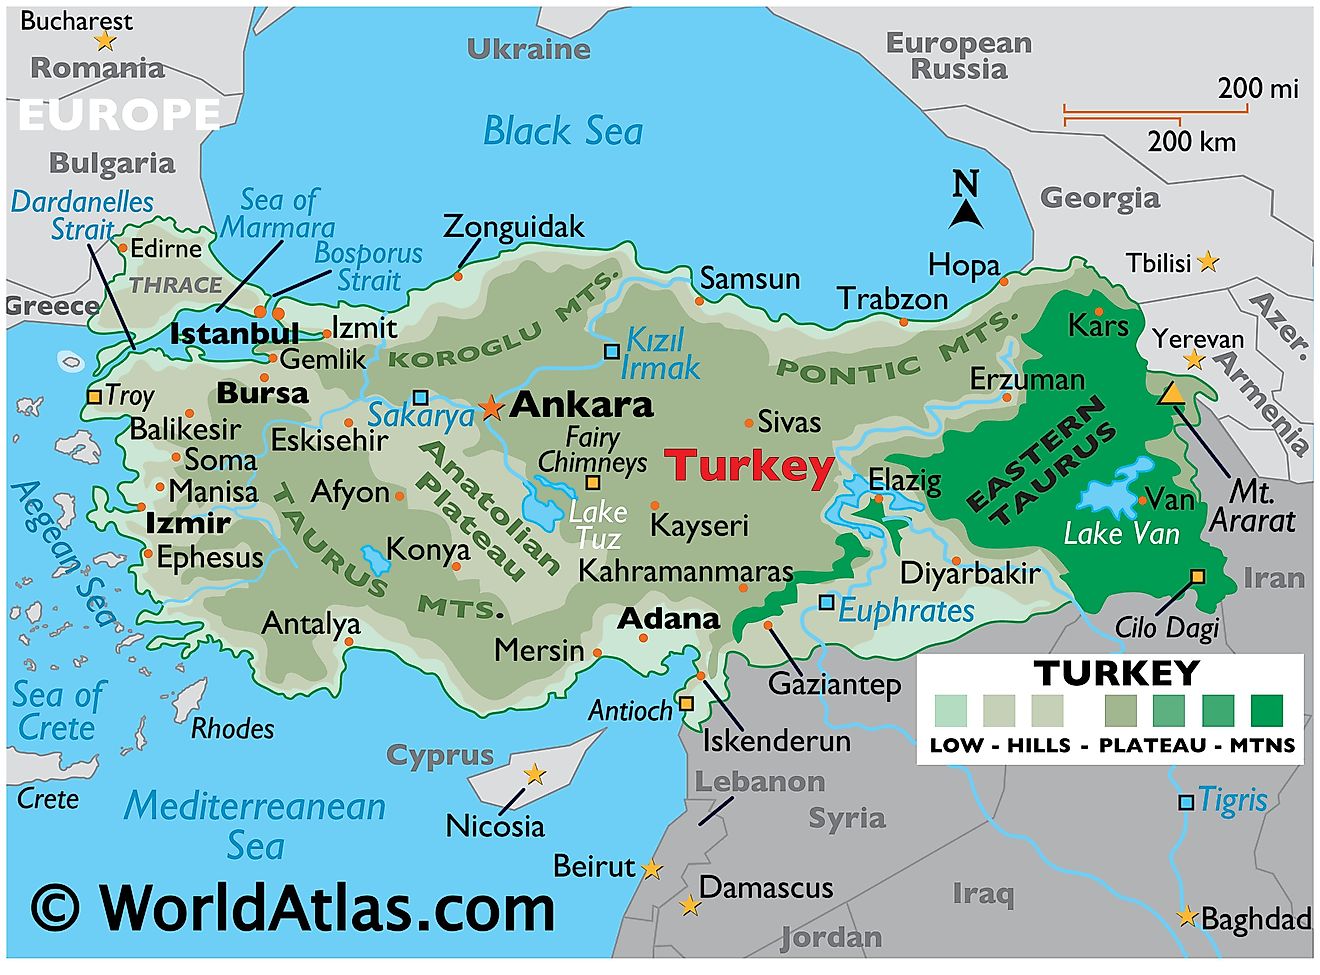 Mapa físico de Turquía con límites estatales, relieve, principales cadenas montañosas, ríos, lagos, ciudades importantes y más.